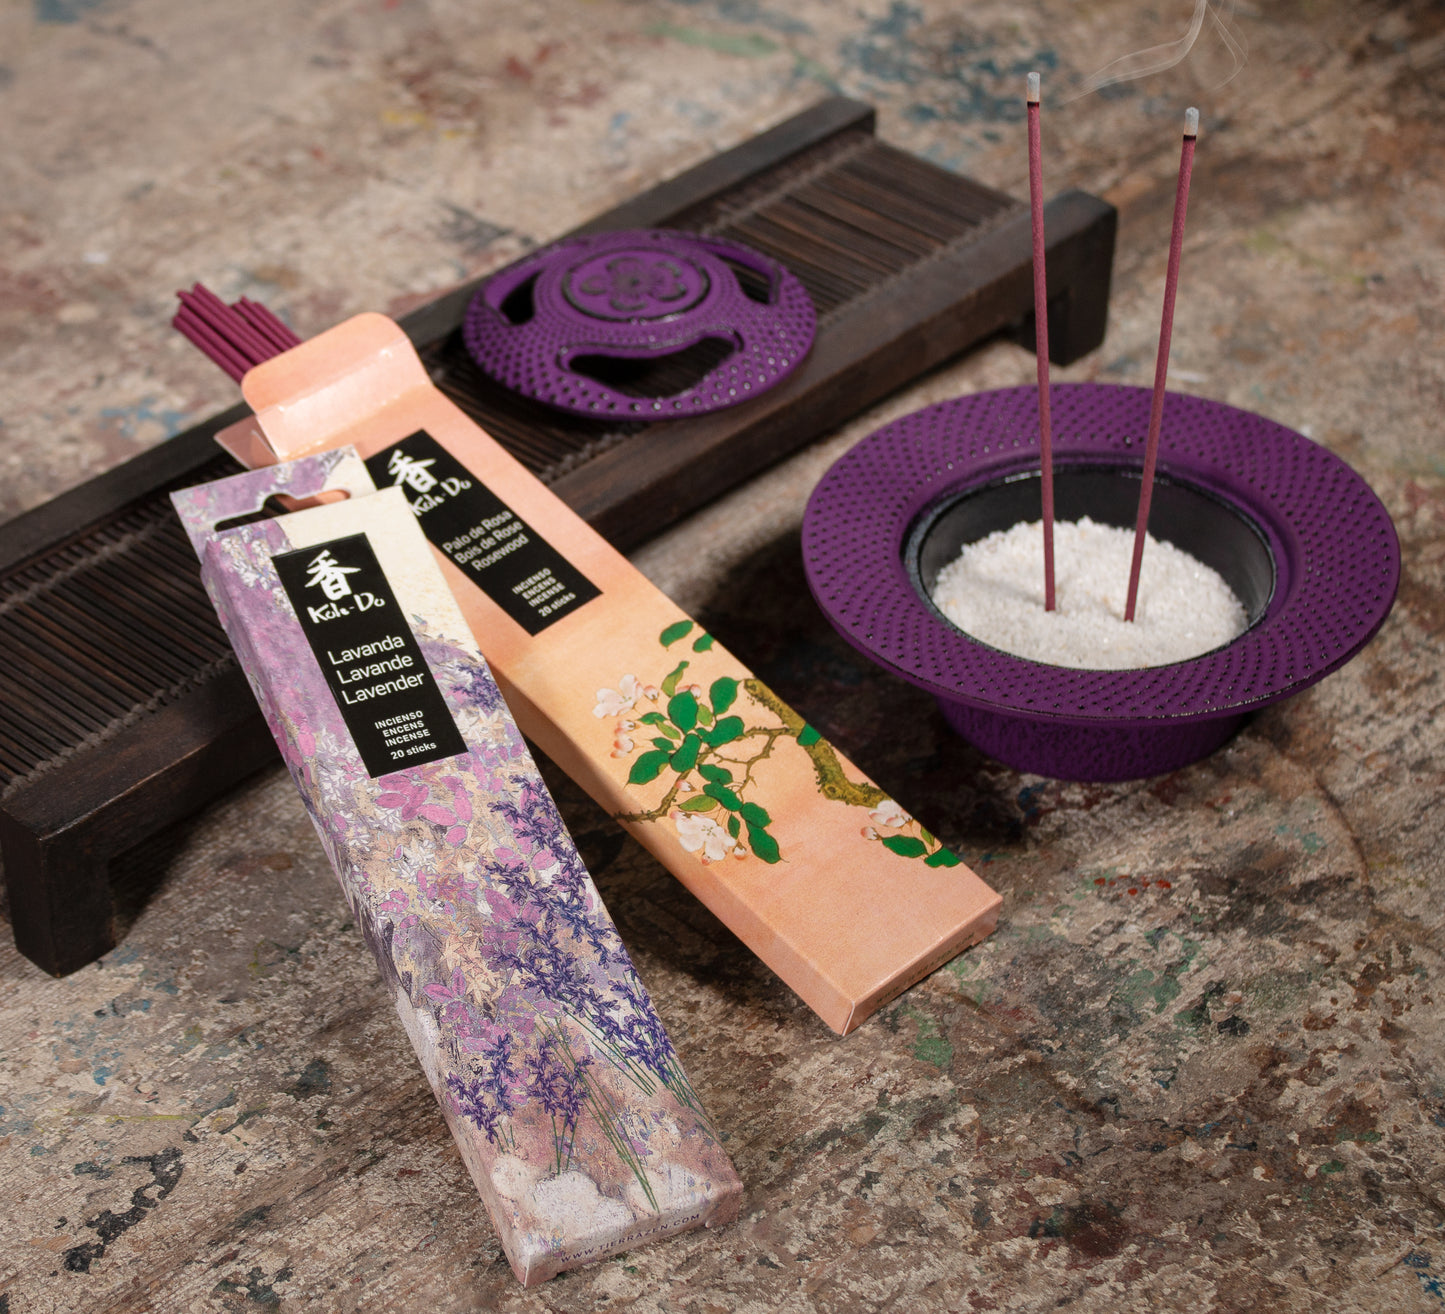 Iwachu Incense Burner - Purple Sakura